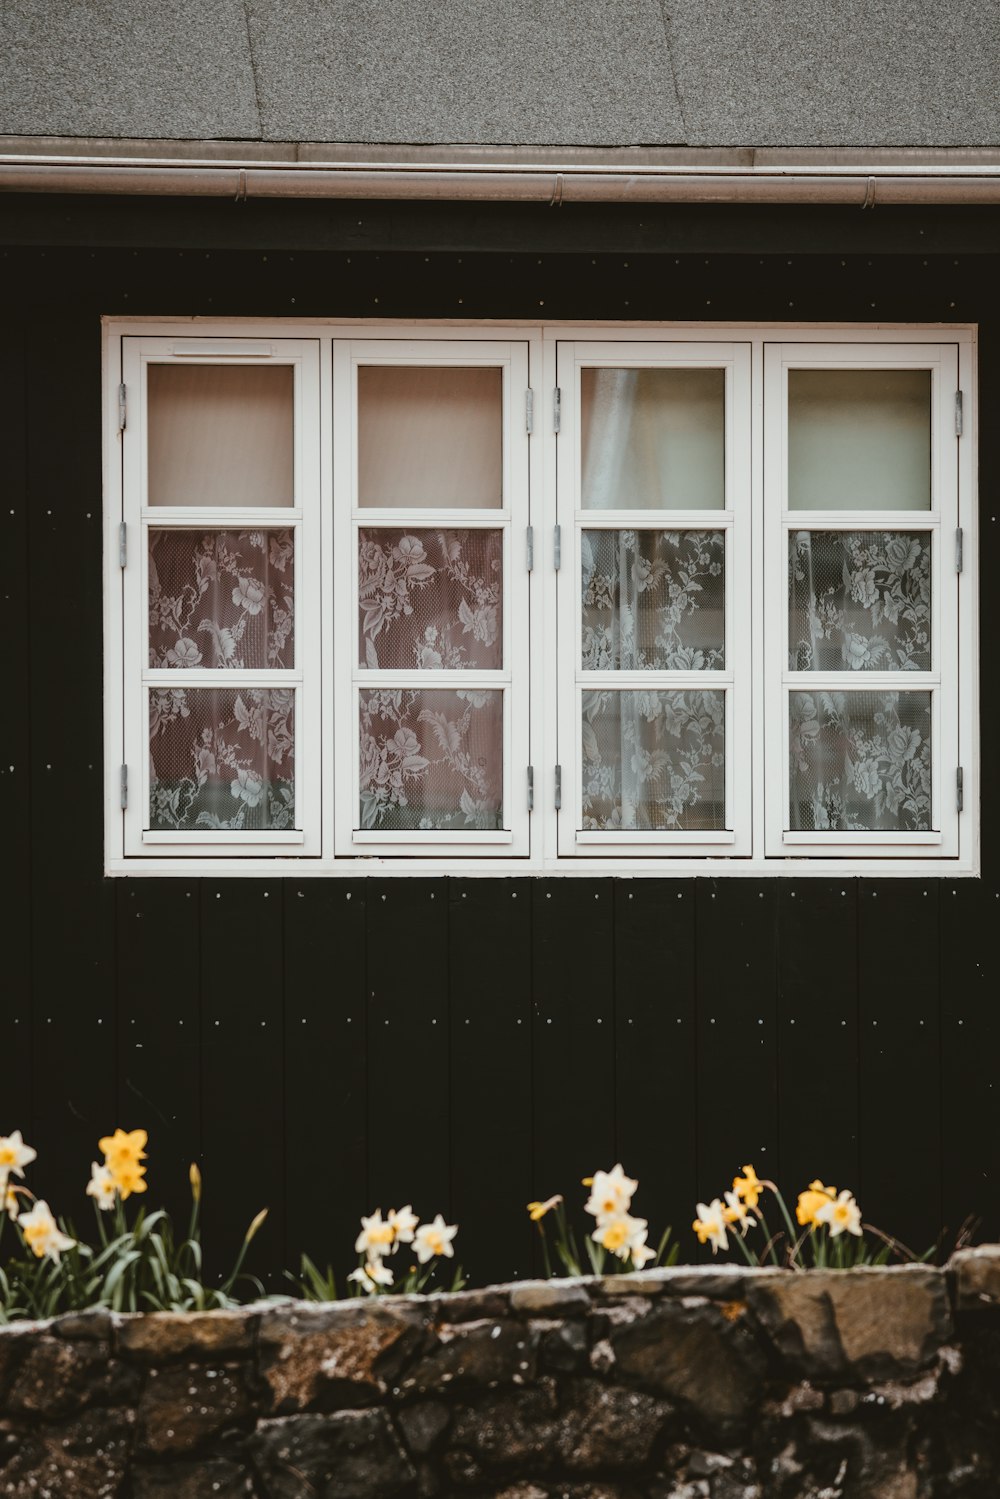 foto de janelas fechadas perto de flores